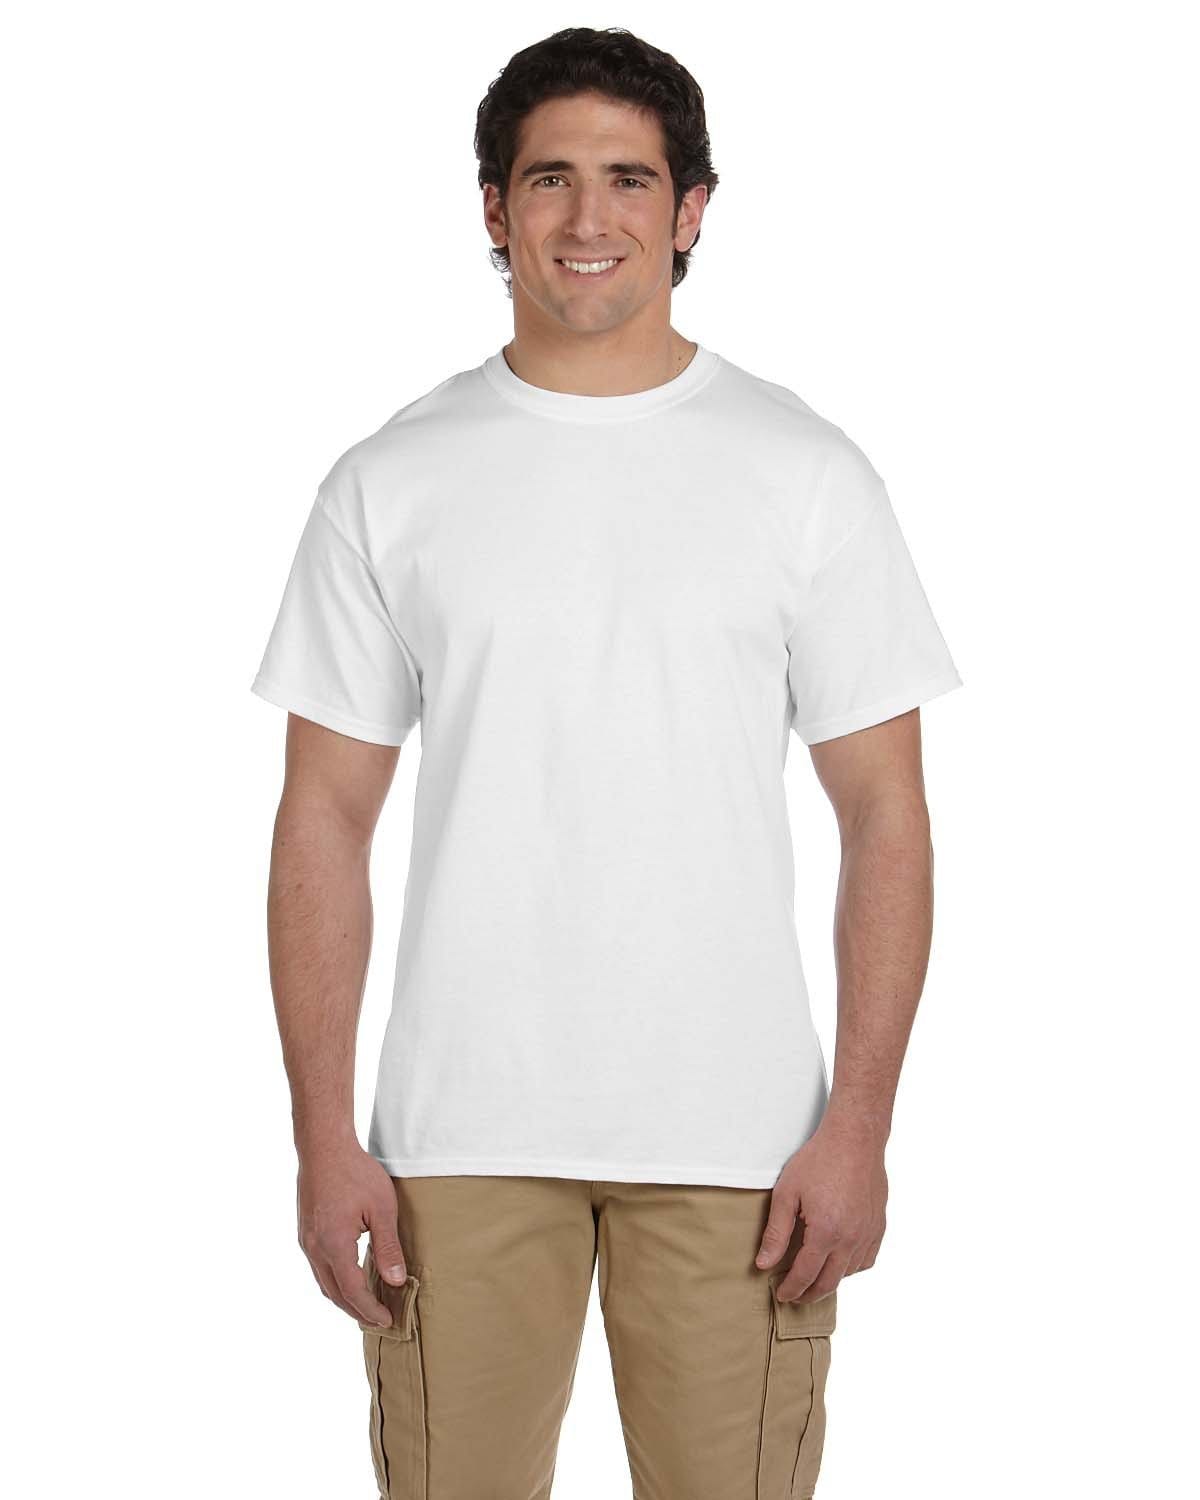 Hanes 50/50 ComfortBlend T-Shirt - Screen - Colors